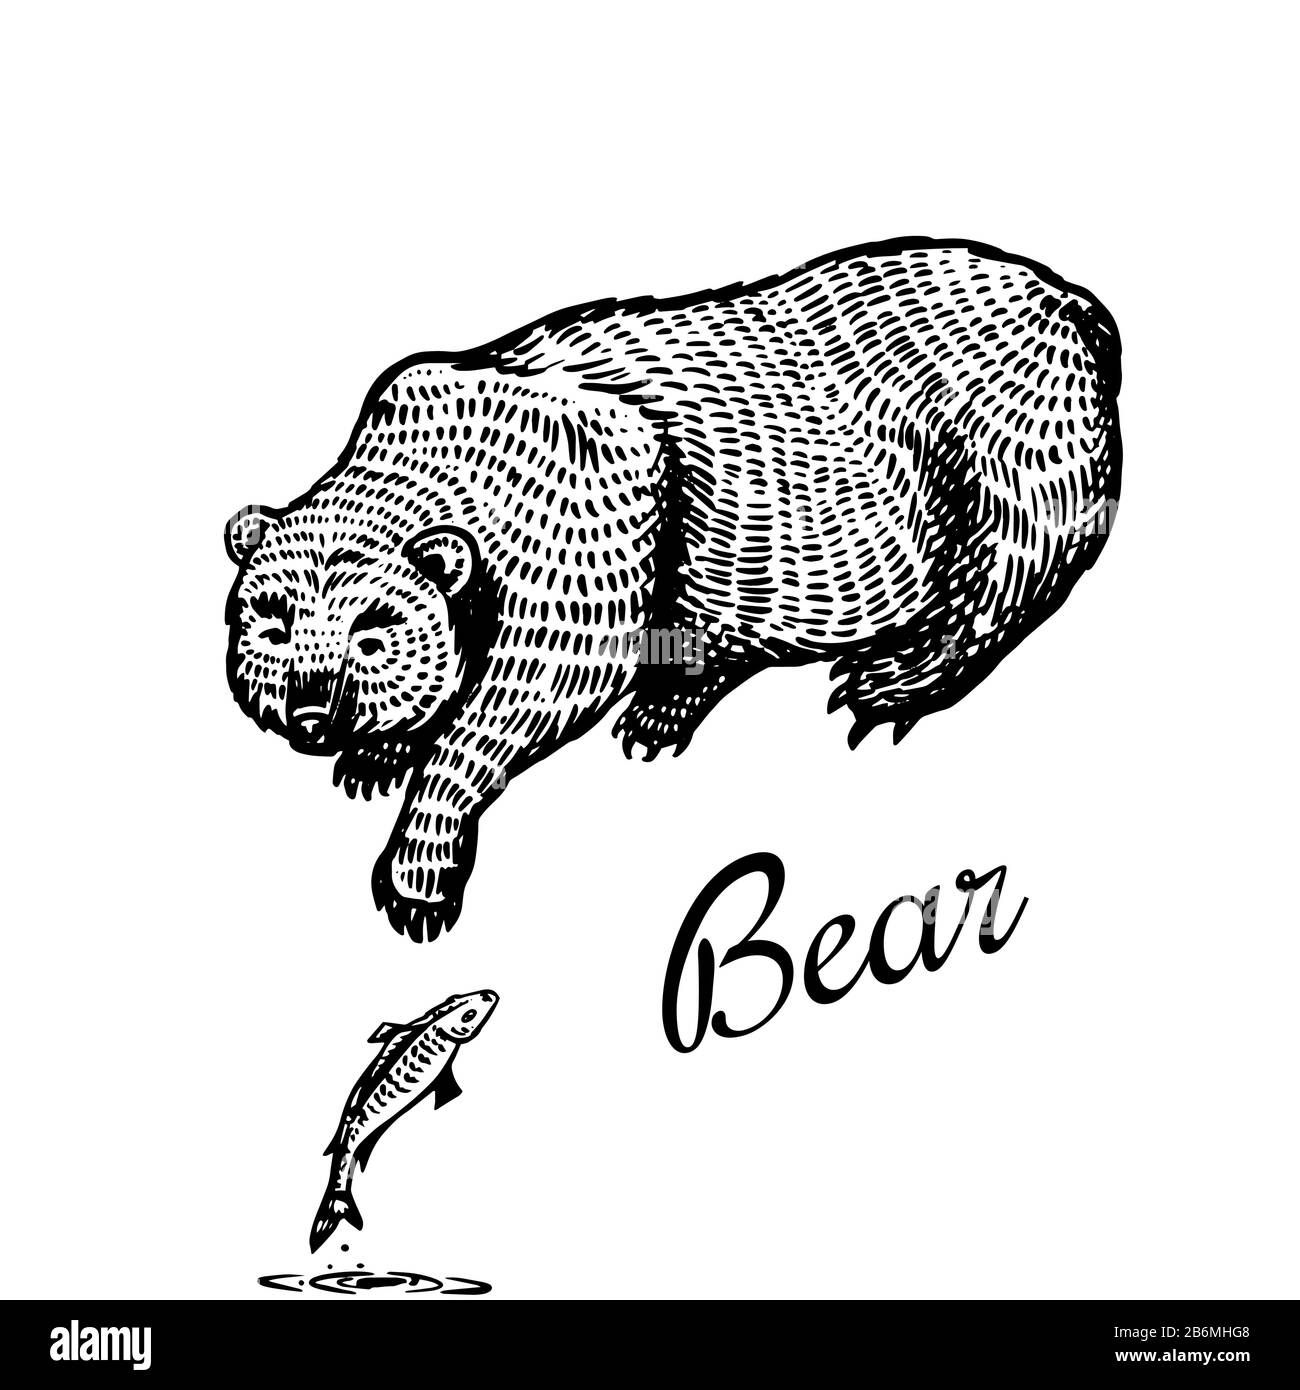 Der Grizzly-Bär fängt mit seiner Pfote Fische. Braunes Wildtier. Rückansicht. Handgezeichnete, gravierte alte Skizze für T-Shirt, Tattoo oder Etikett oder Poster. Vektor Stock Vektor